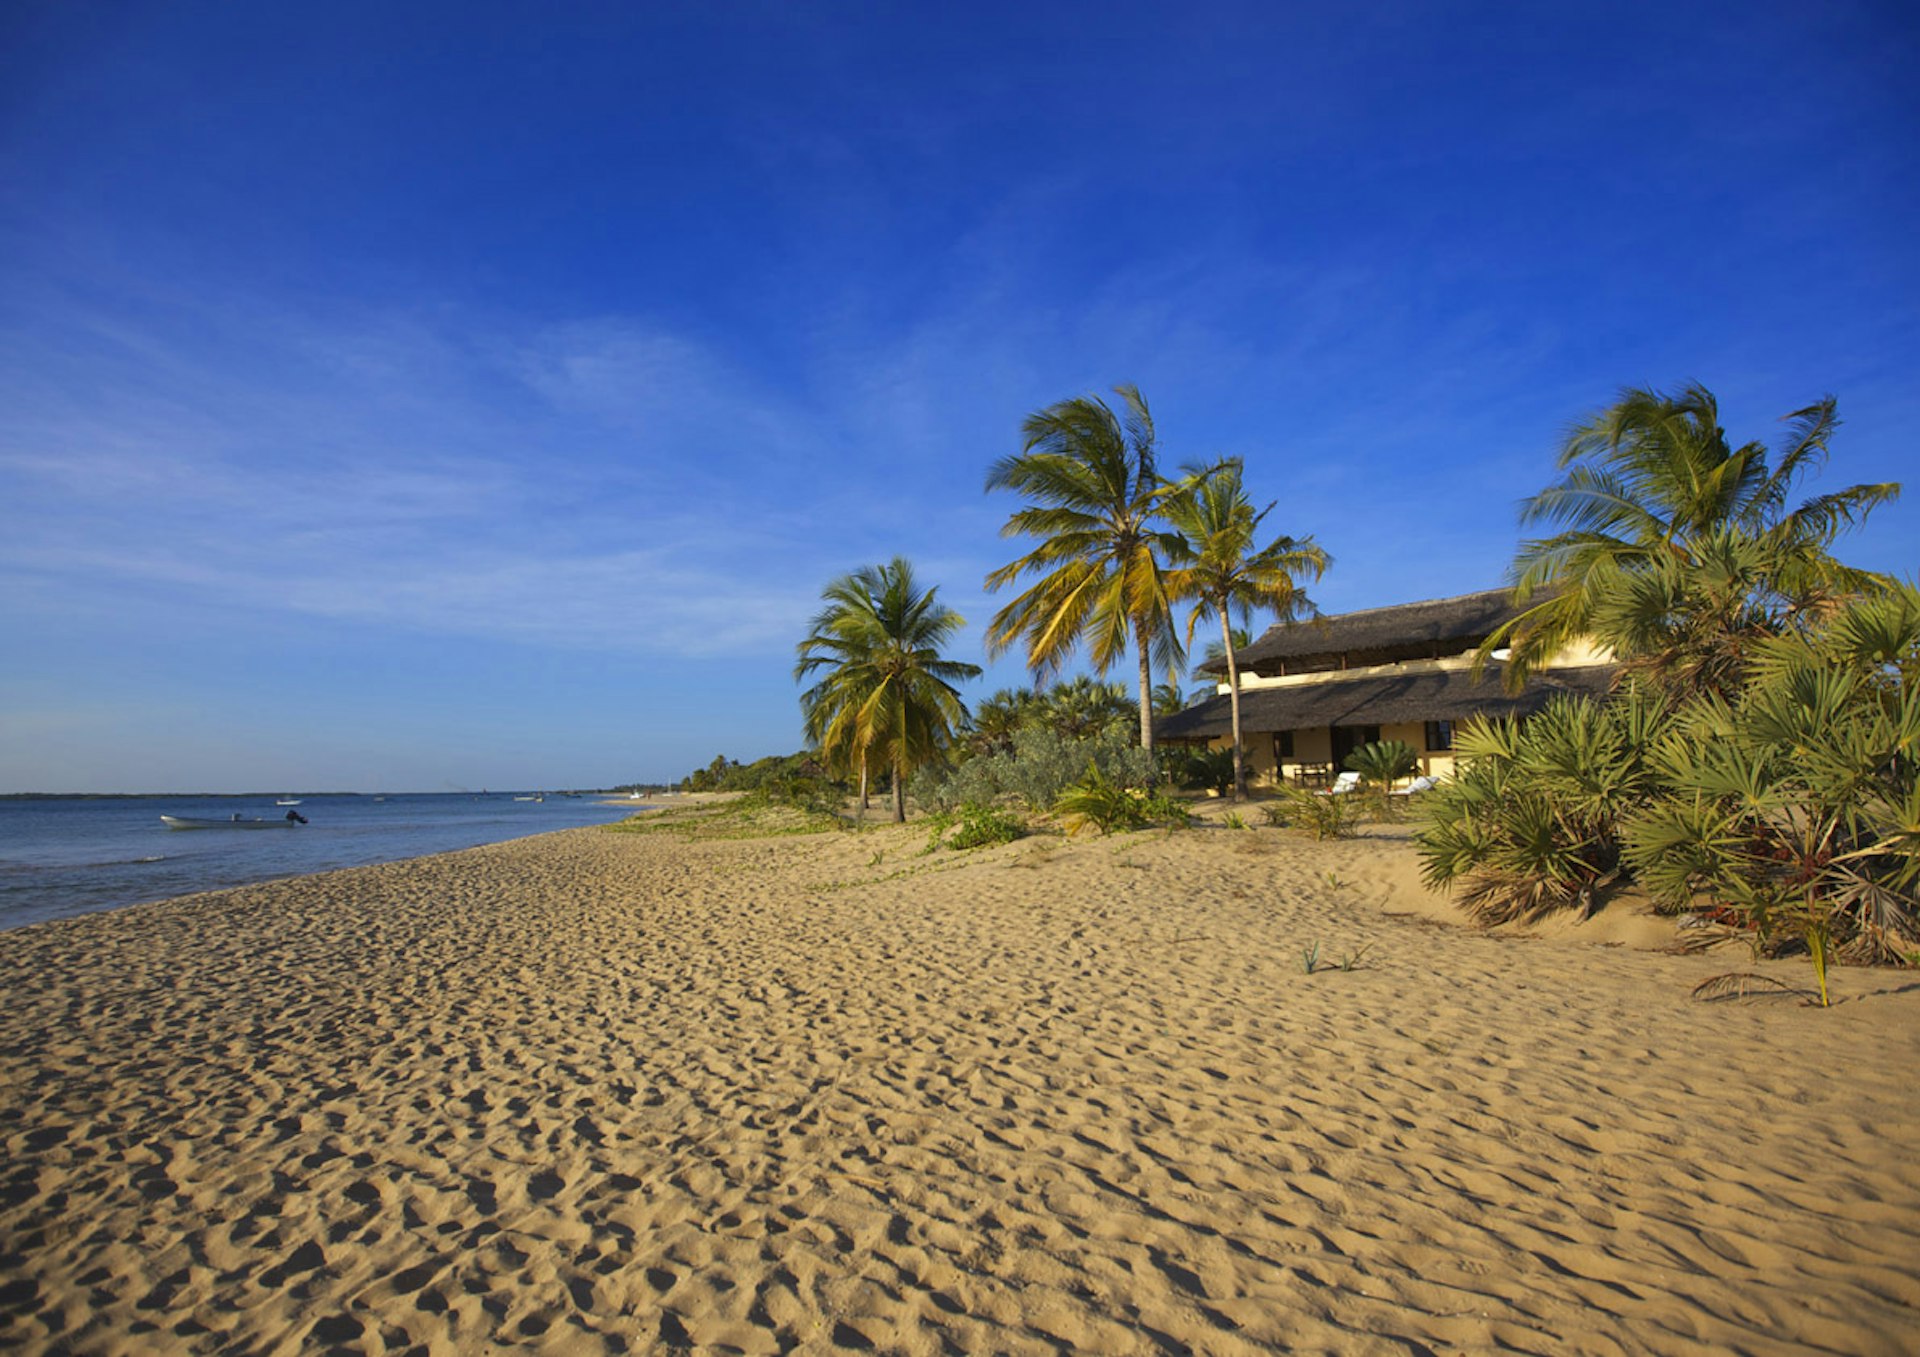 A view of Shela Beach in the Lamu Archipelago